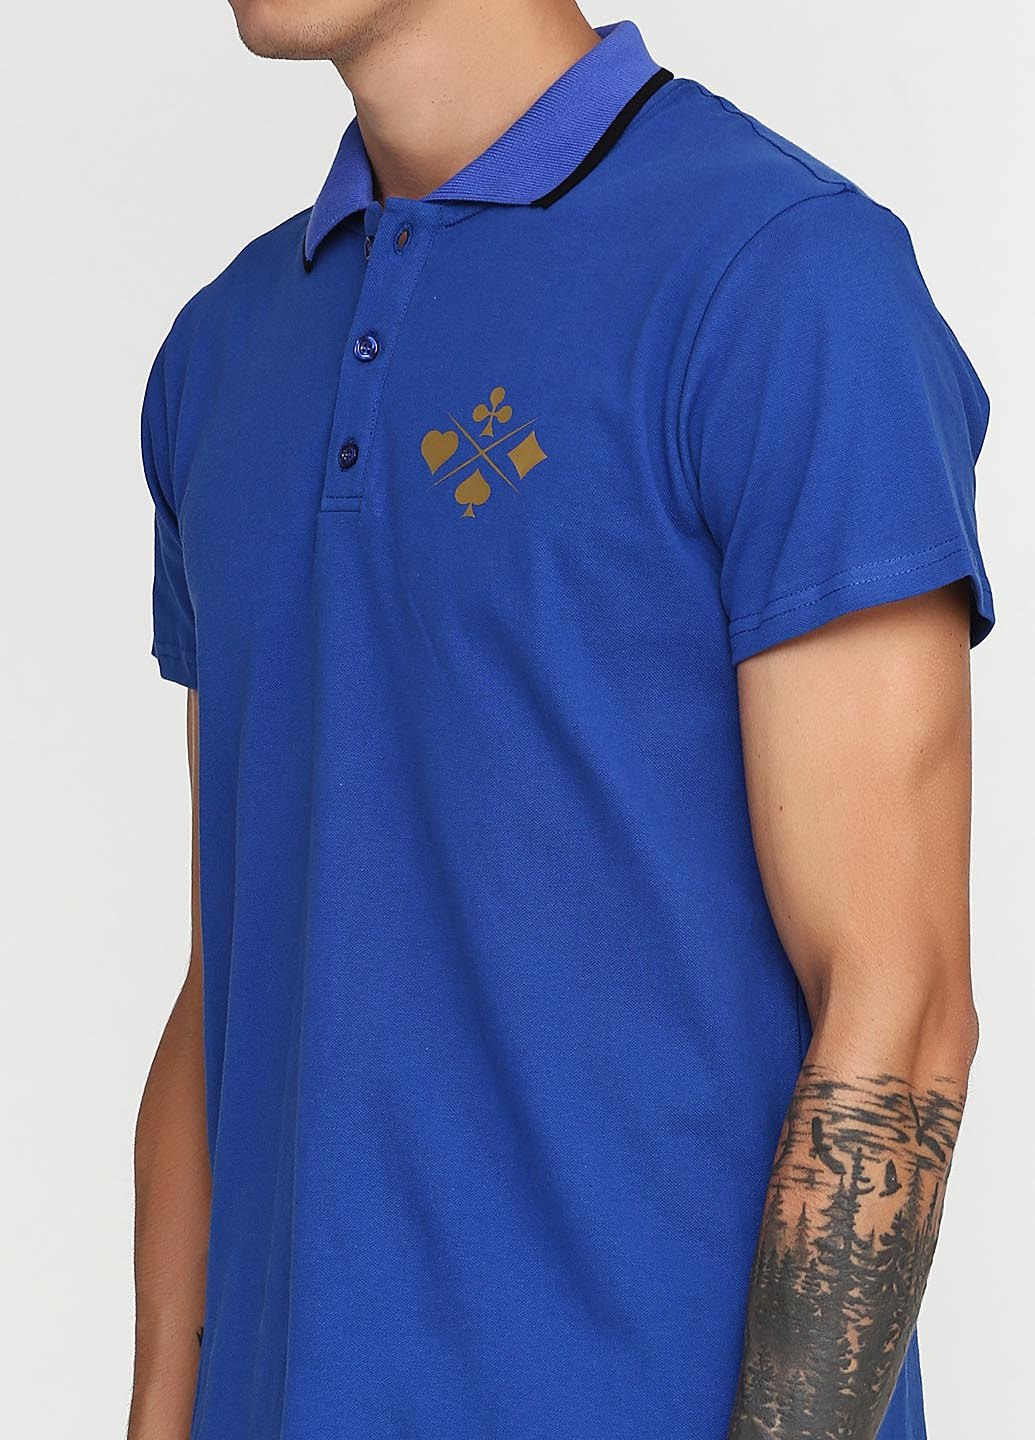 Синяя футболка-поло для мужчин Tryapos с рисунком